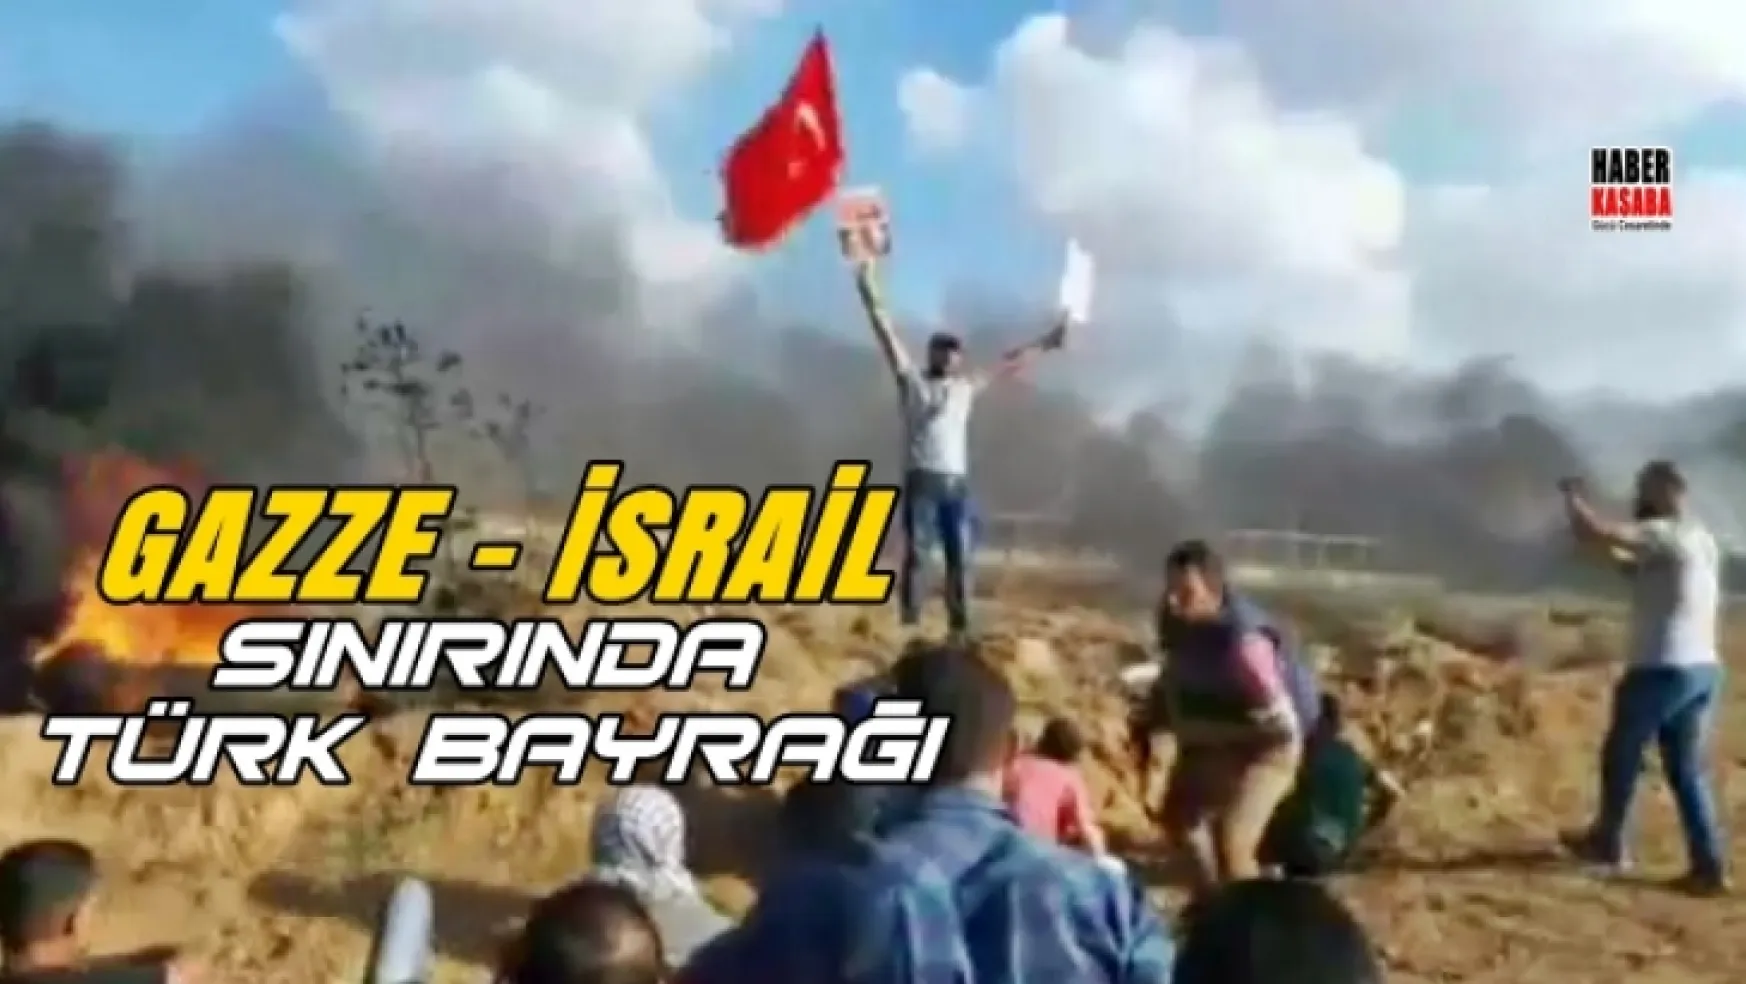 Gazze ile İsrail sınırında Türk bayrağı